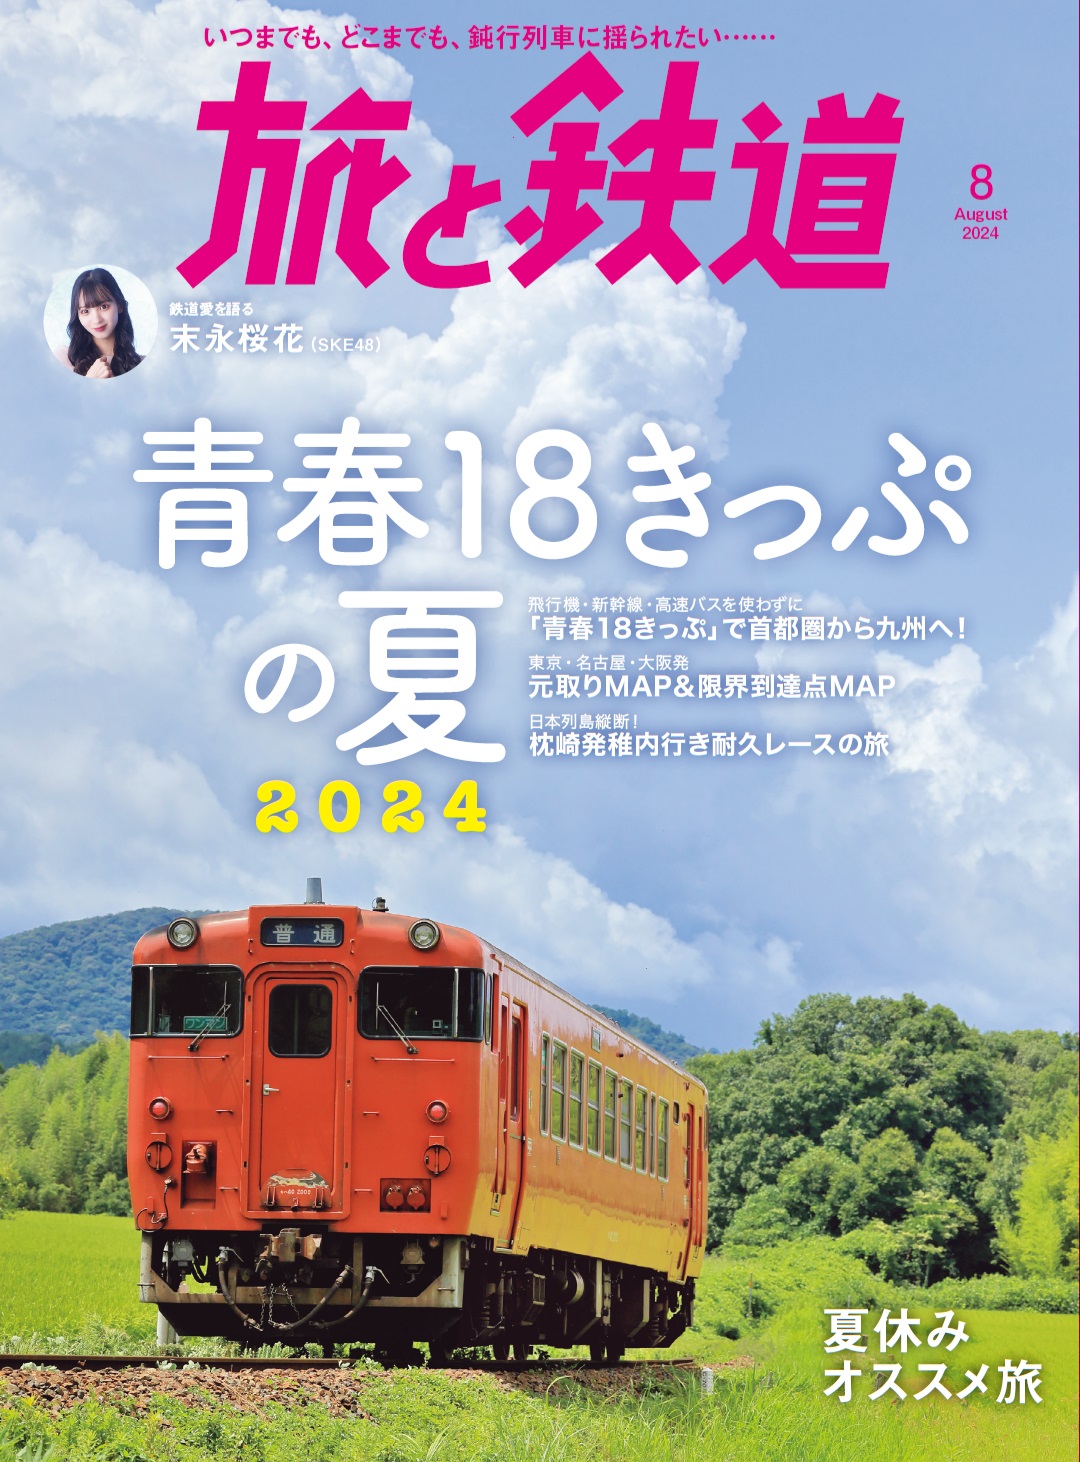 『旅と鉄道』8月号は「青春18きっぷの夏2024」